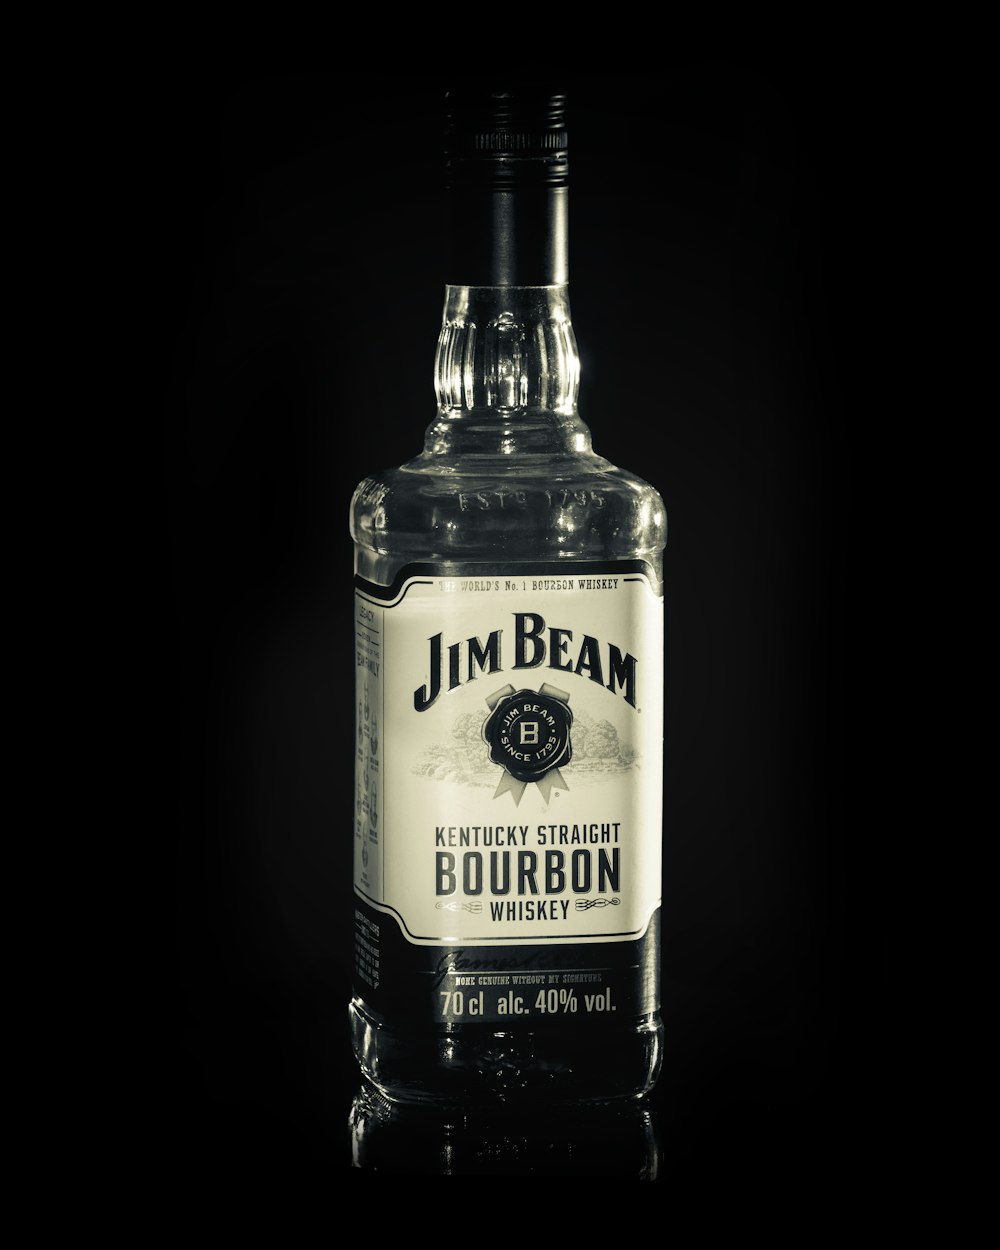 Jim Beam Bourbon bottle